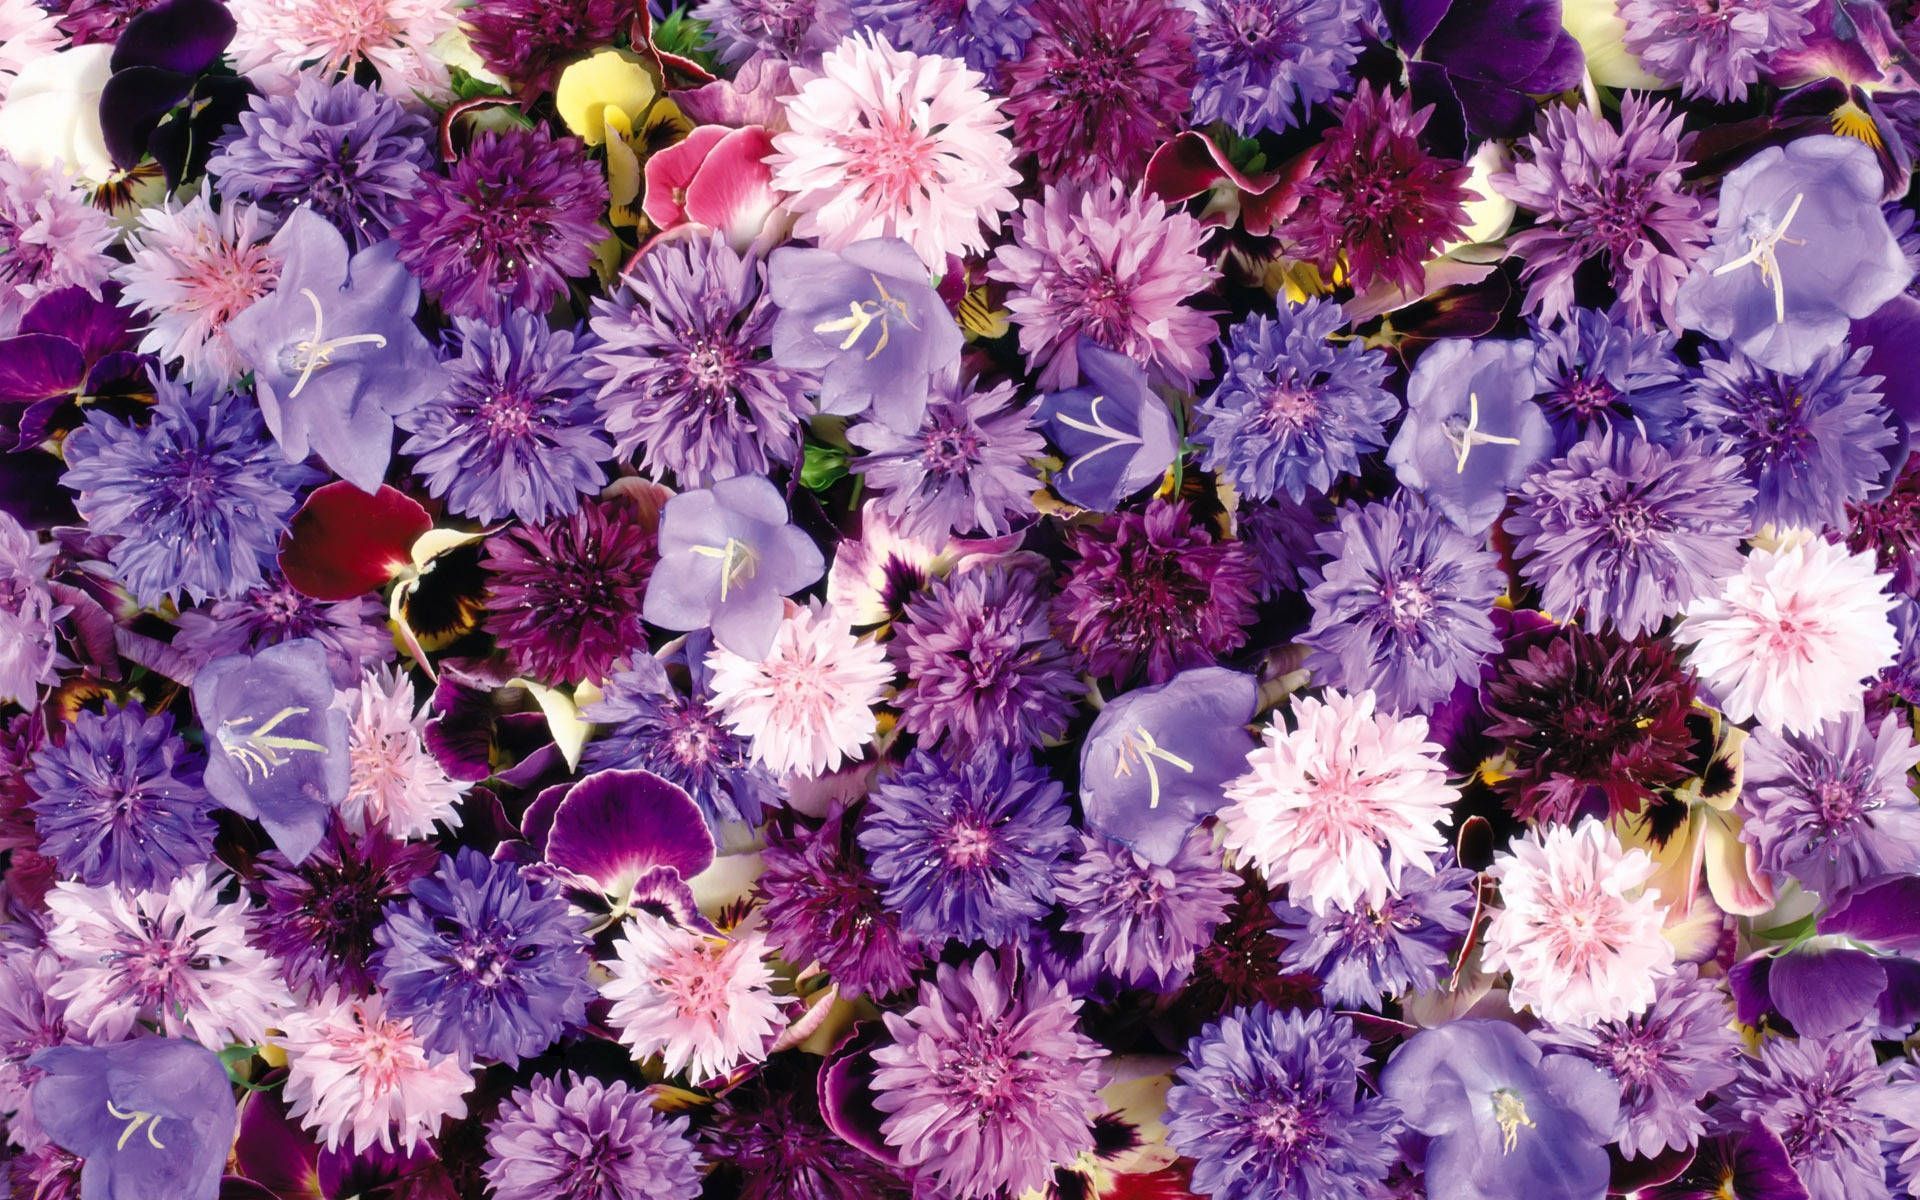  HD Blumen Hintergrundbild 1920x1200. + Blumen Wallpaper Full HD, 4K✓Free to Use